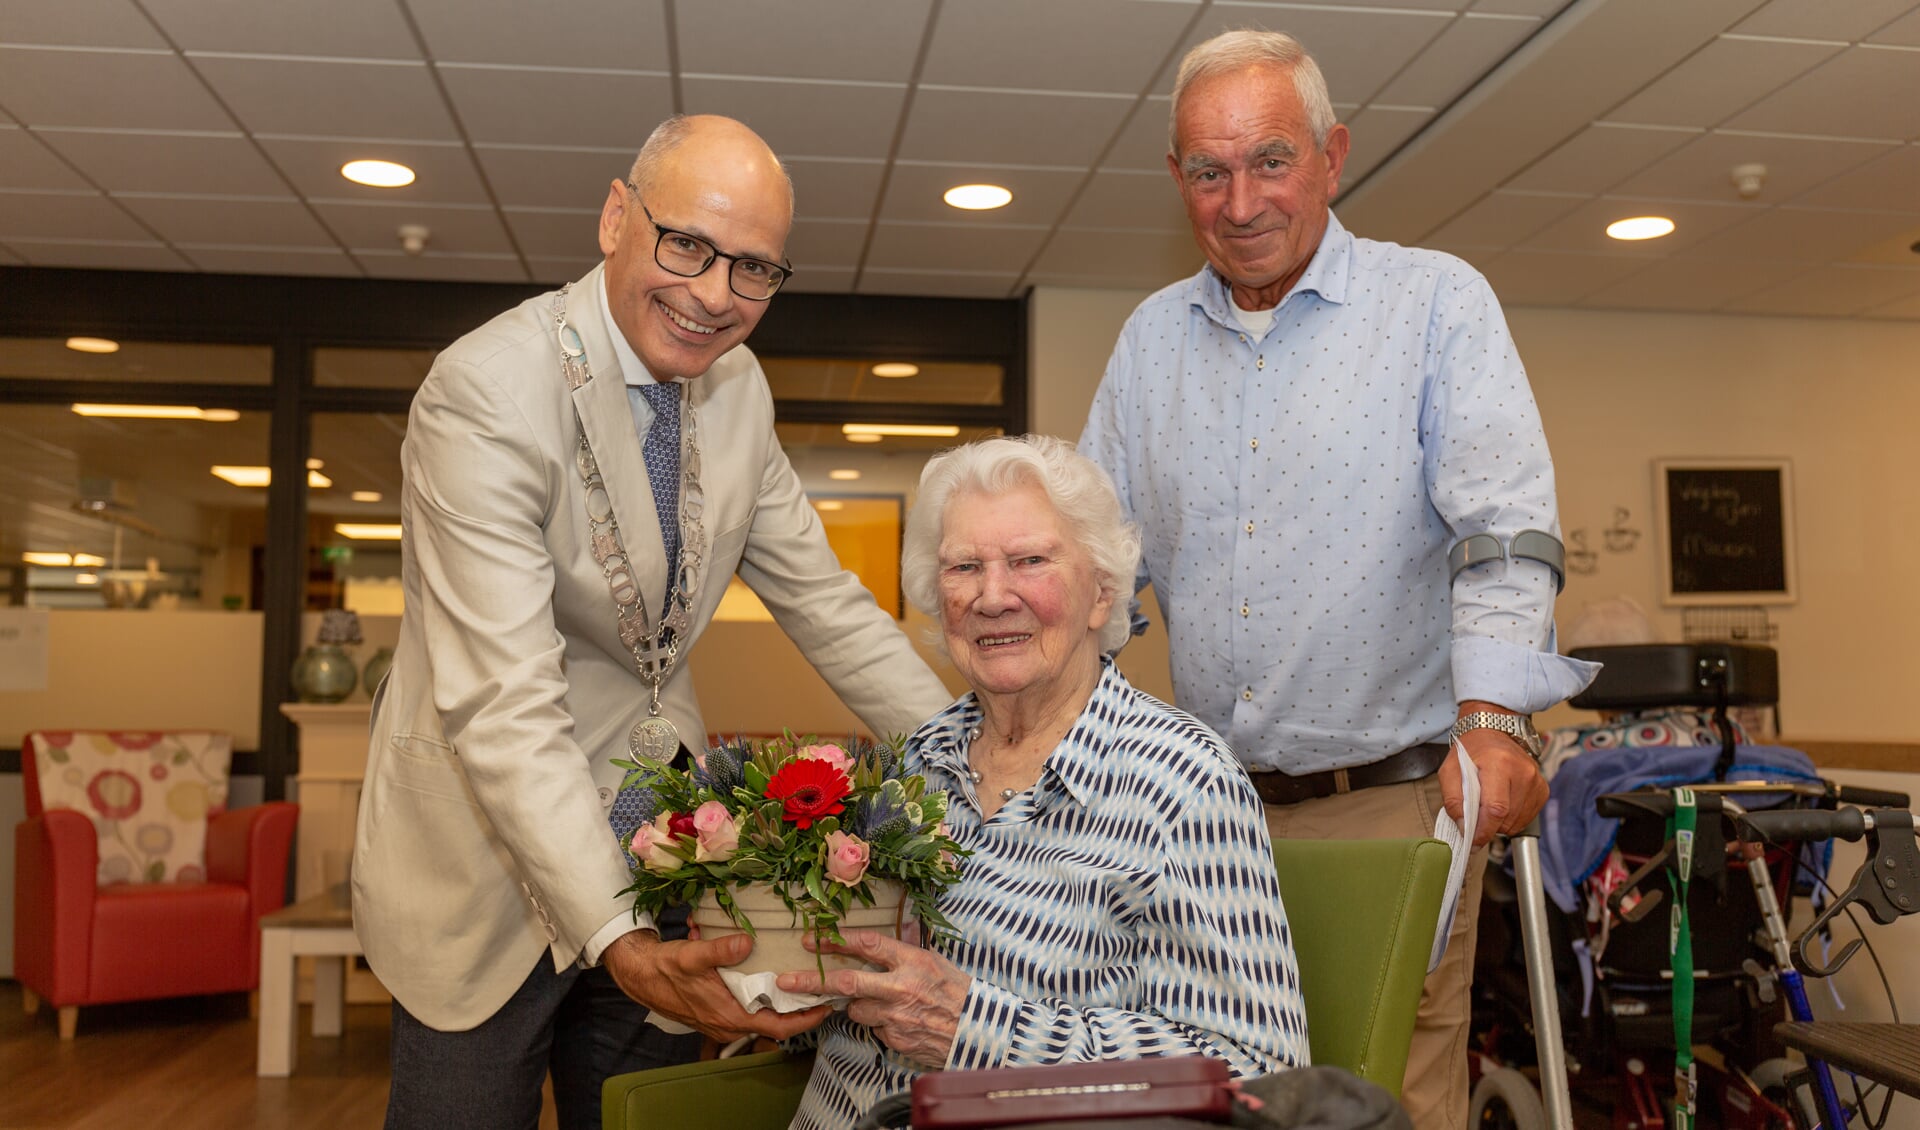 Mevrouw Tuinstra is heel blij met het bloemstukje dat ze kreeg van de burgemeester. | Foto Wil van Elk